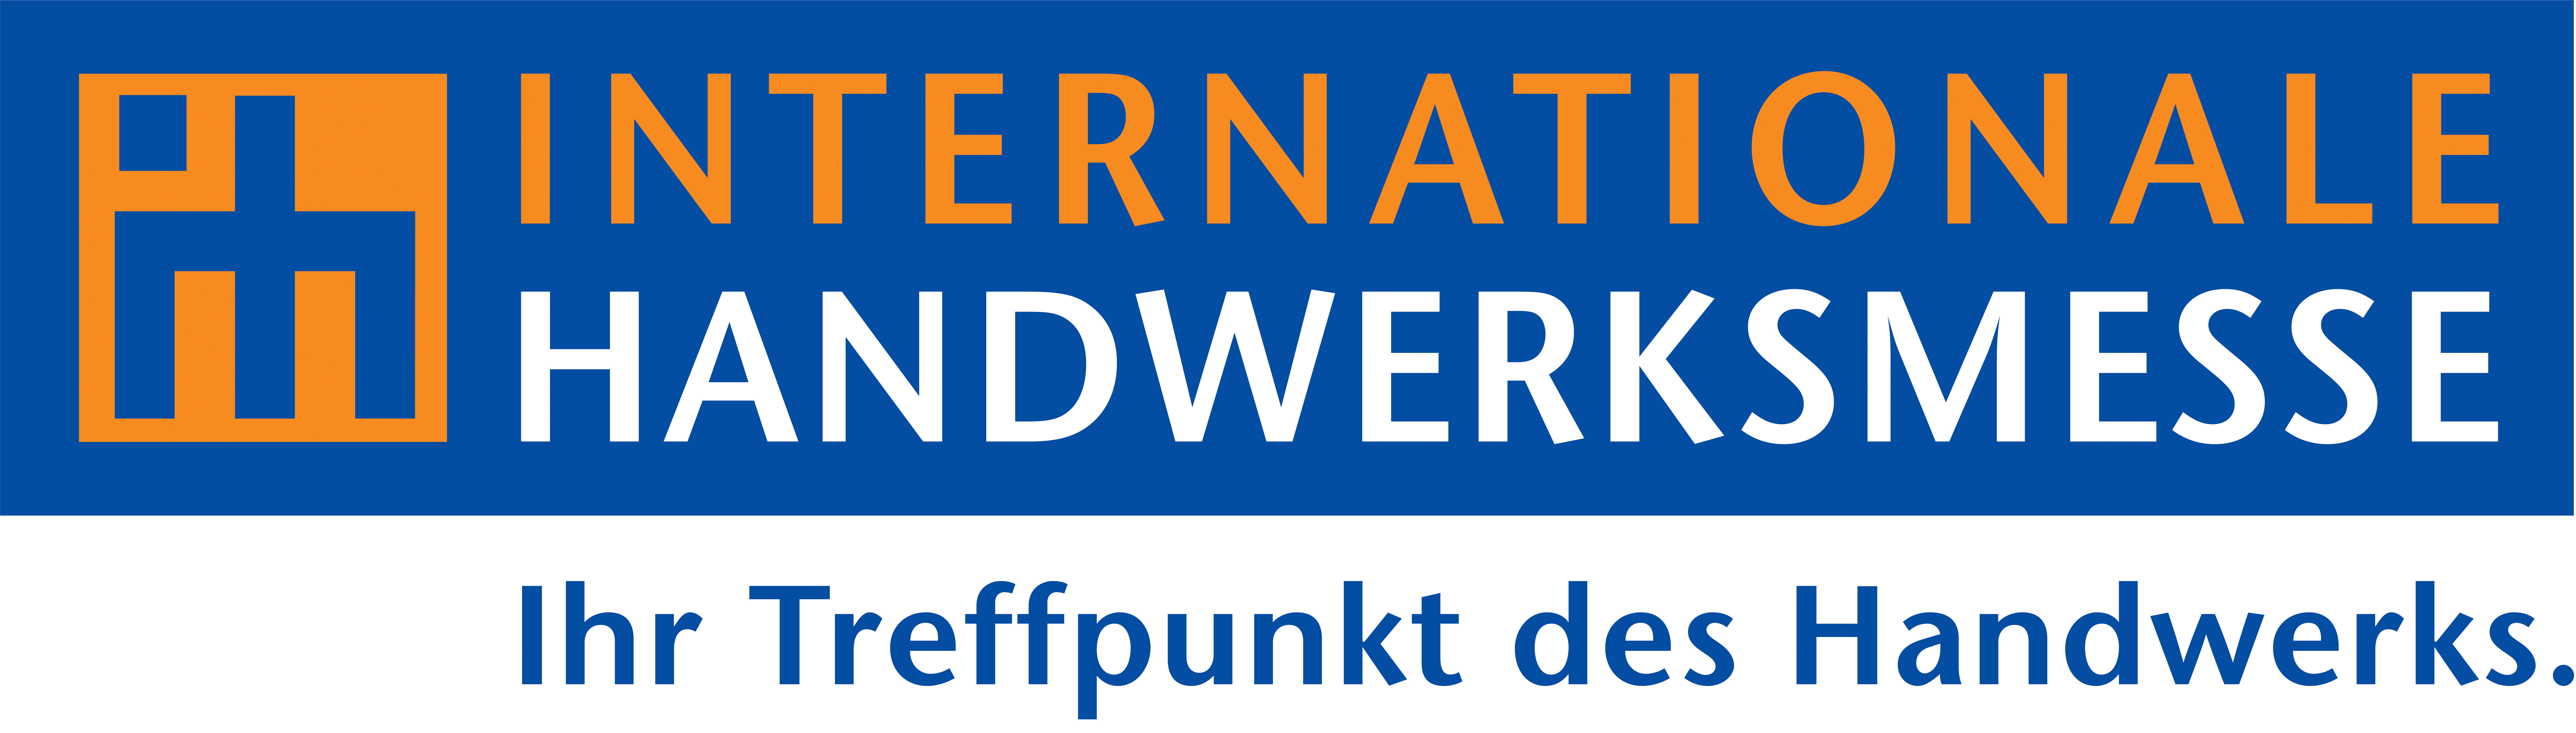 Internationale Handwerksmesse München